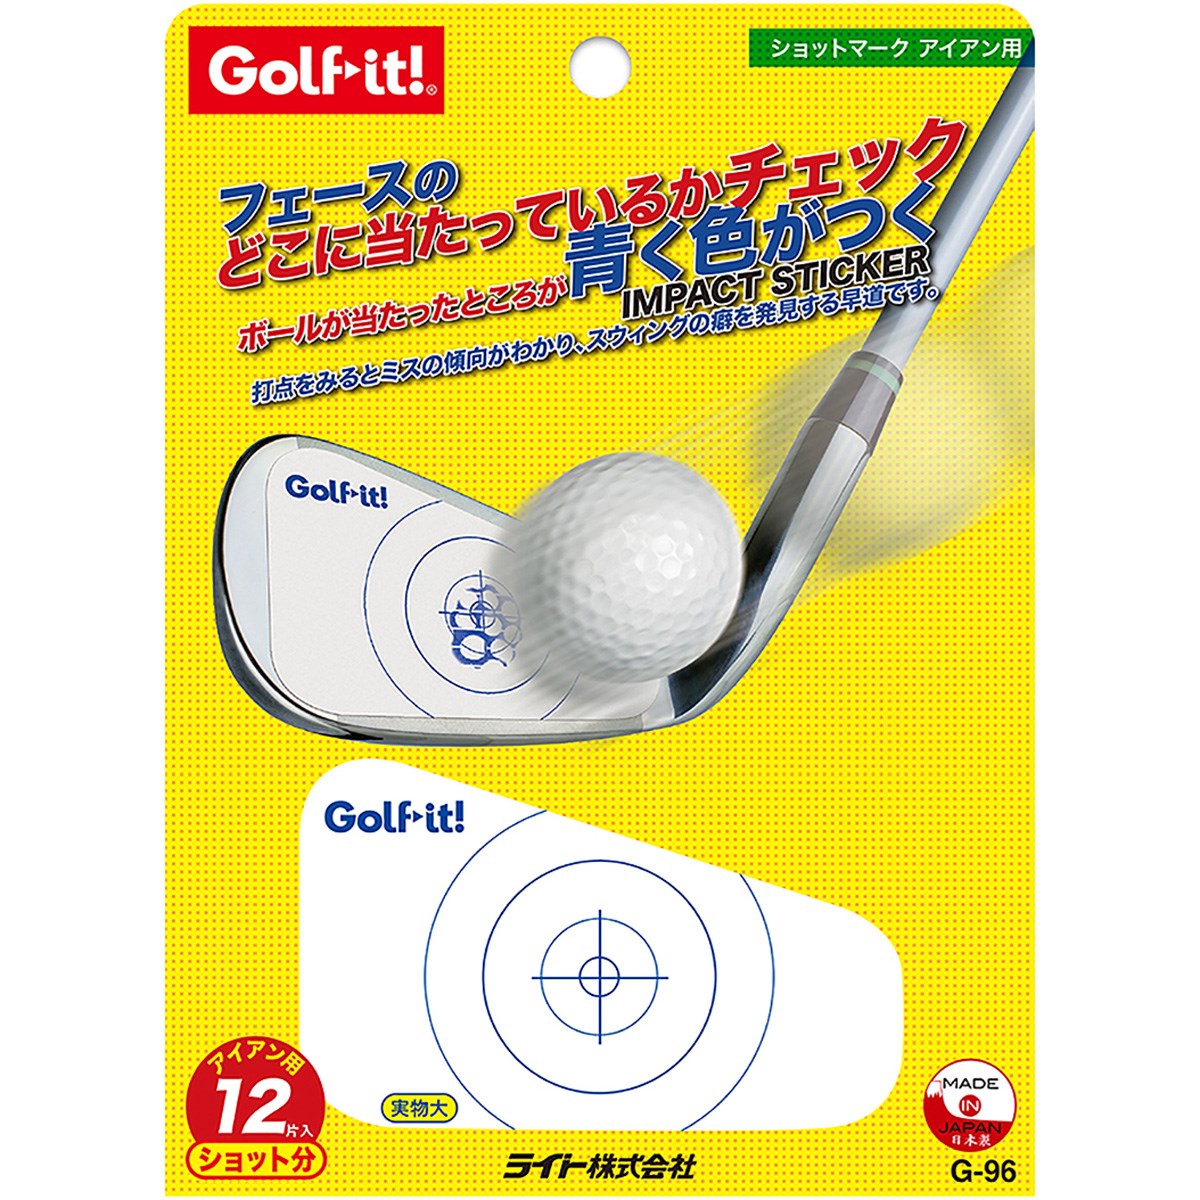 dショッピング | 『ゴルフ練習器具』で絞り込んだ通販できる商品一覧 | ドコモの通販サイト